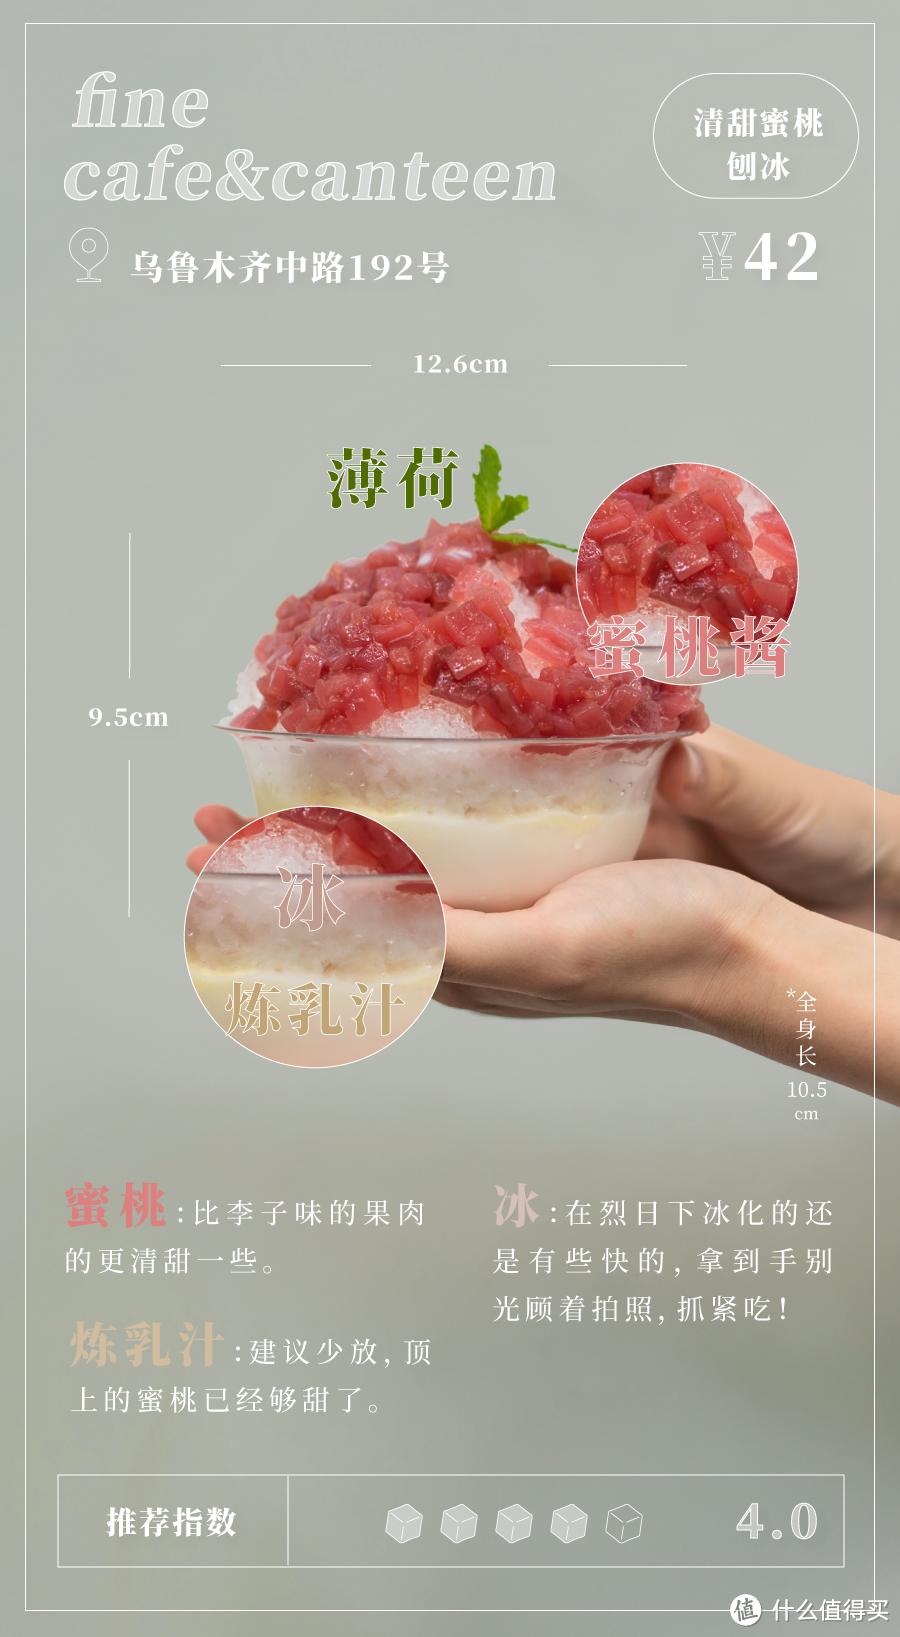 上海哪里有吃能“嚼”的刨冰？